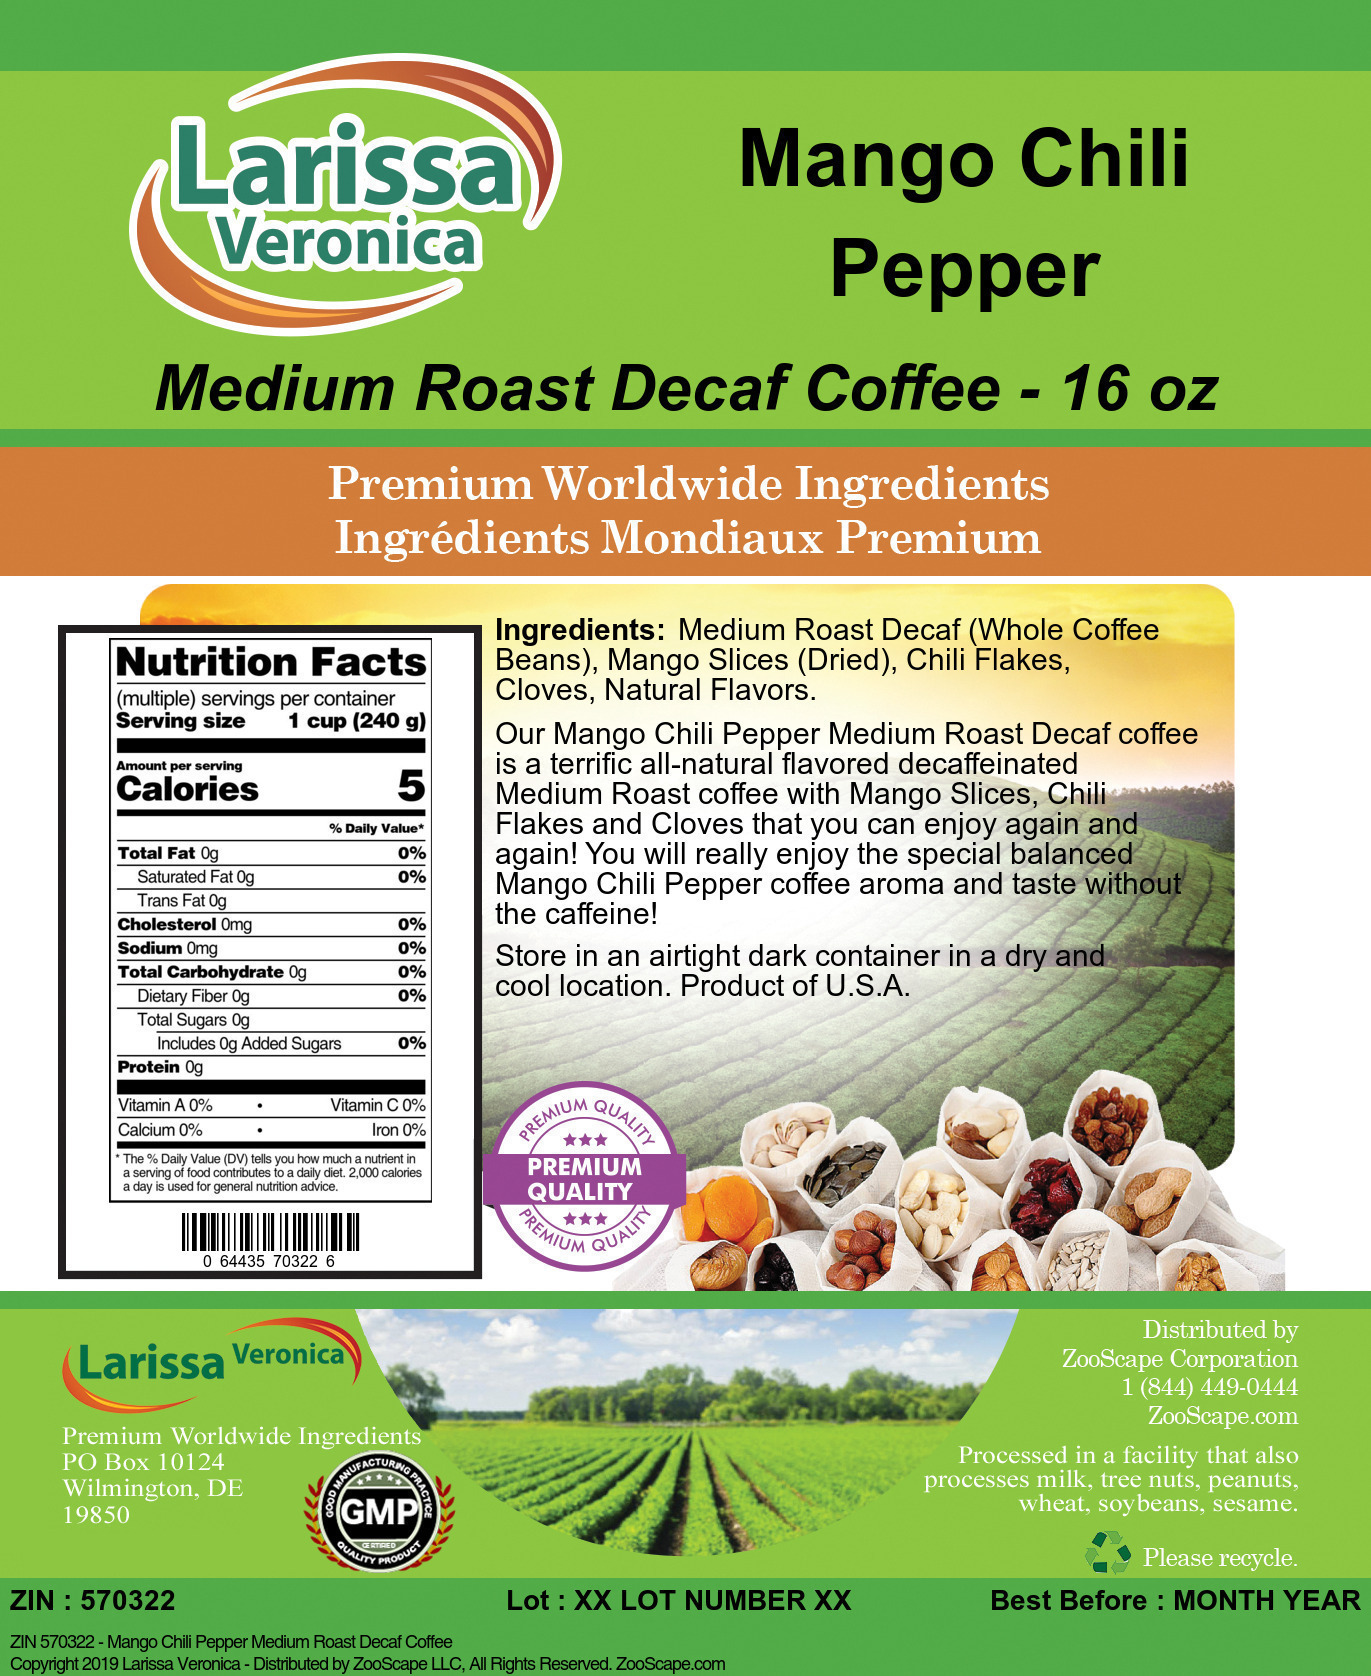 Mango Chili Pepper Medium Roast Decaf Coffee - Label